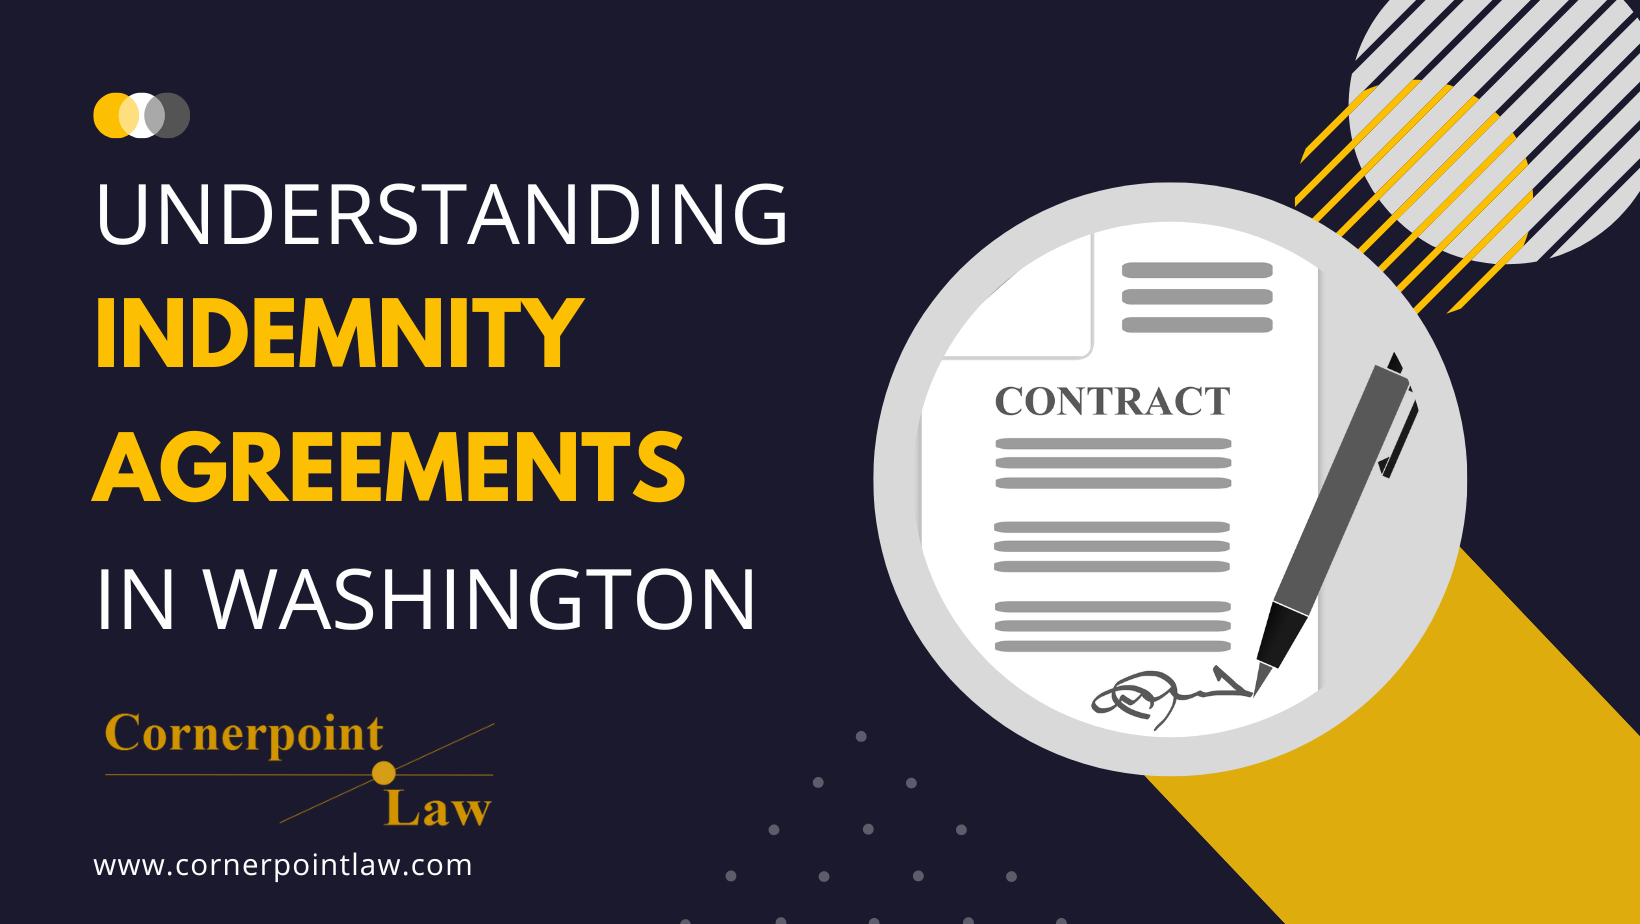 Understanding Indemnity Agreements in Washington Cornerpoint Law Banner